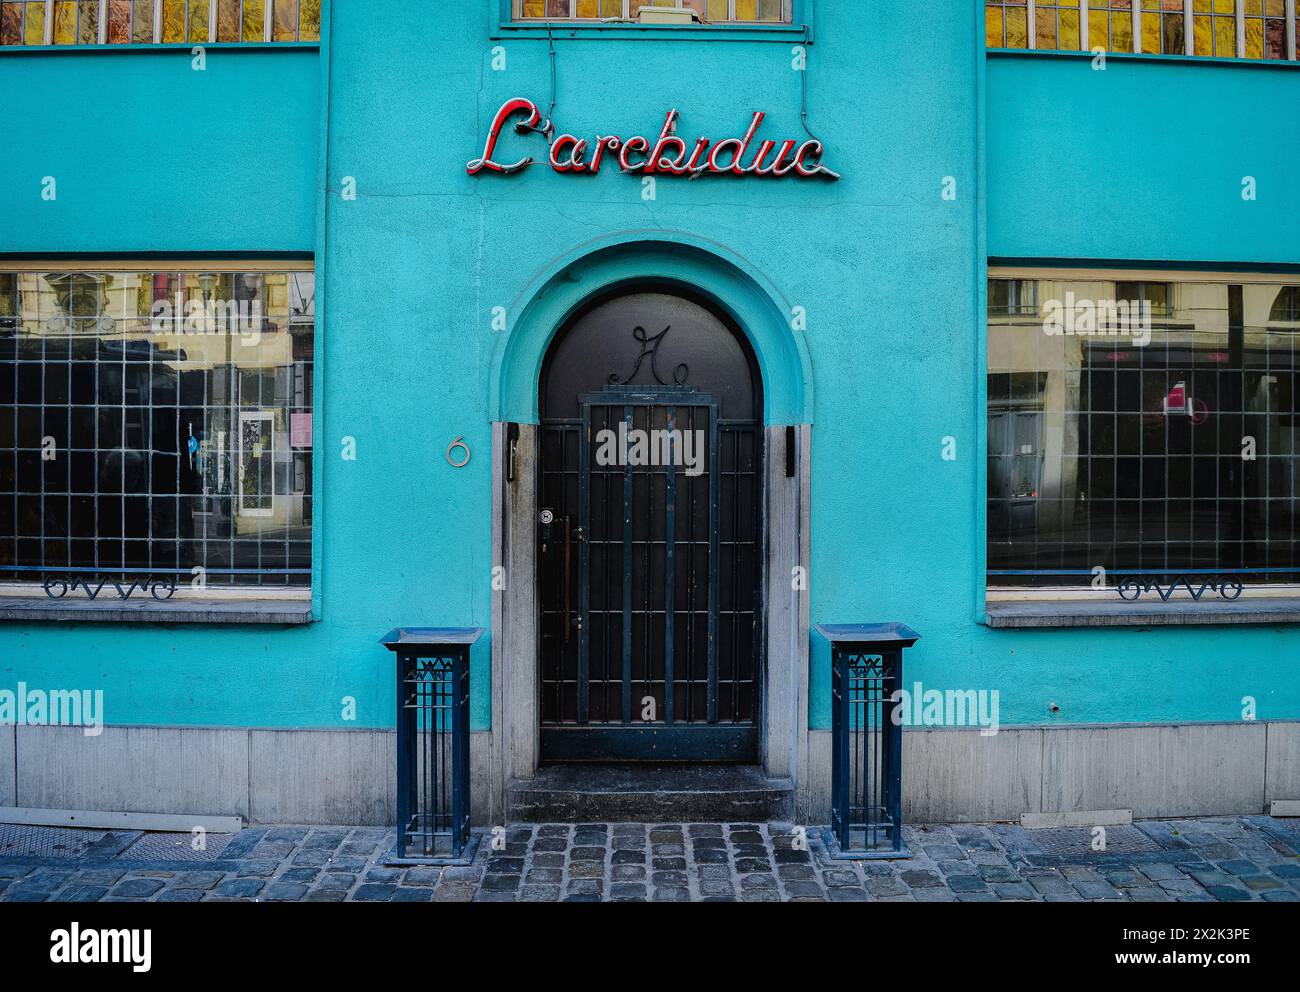 Questa immagine cattura un luminoso edificio turchese con un distintivo segno al neon retrò e una classica porta ad arco, che riflette un'architettura urbana unica Foto Stock